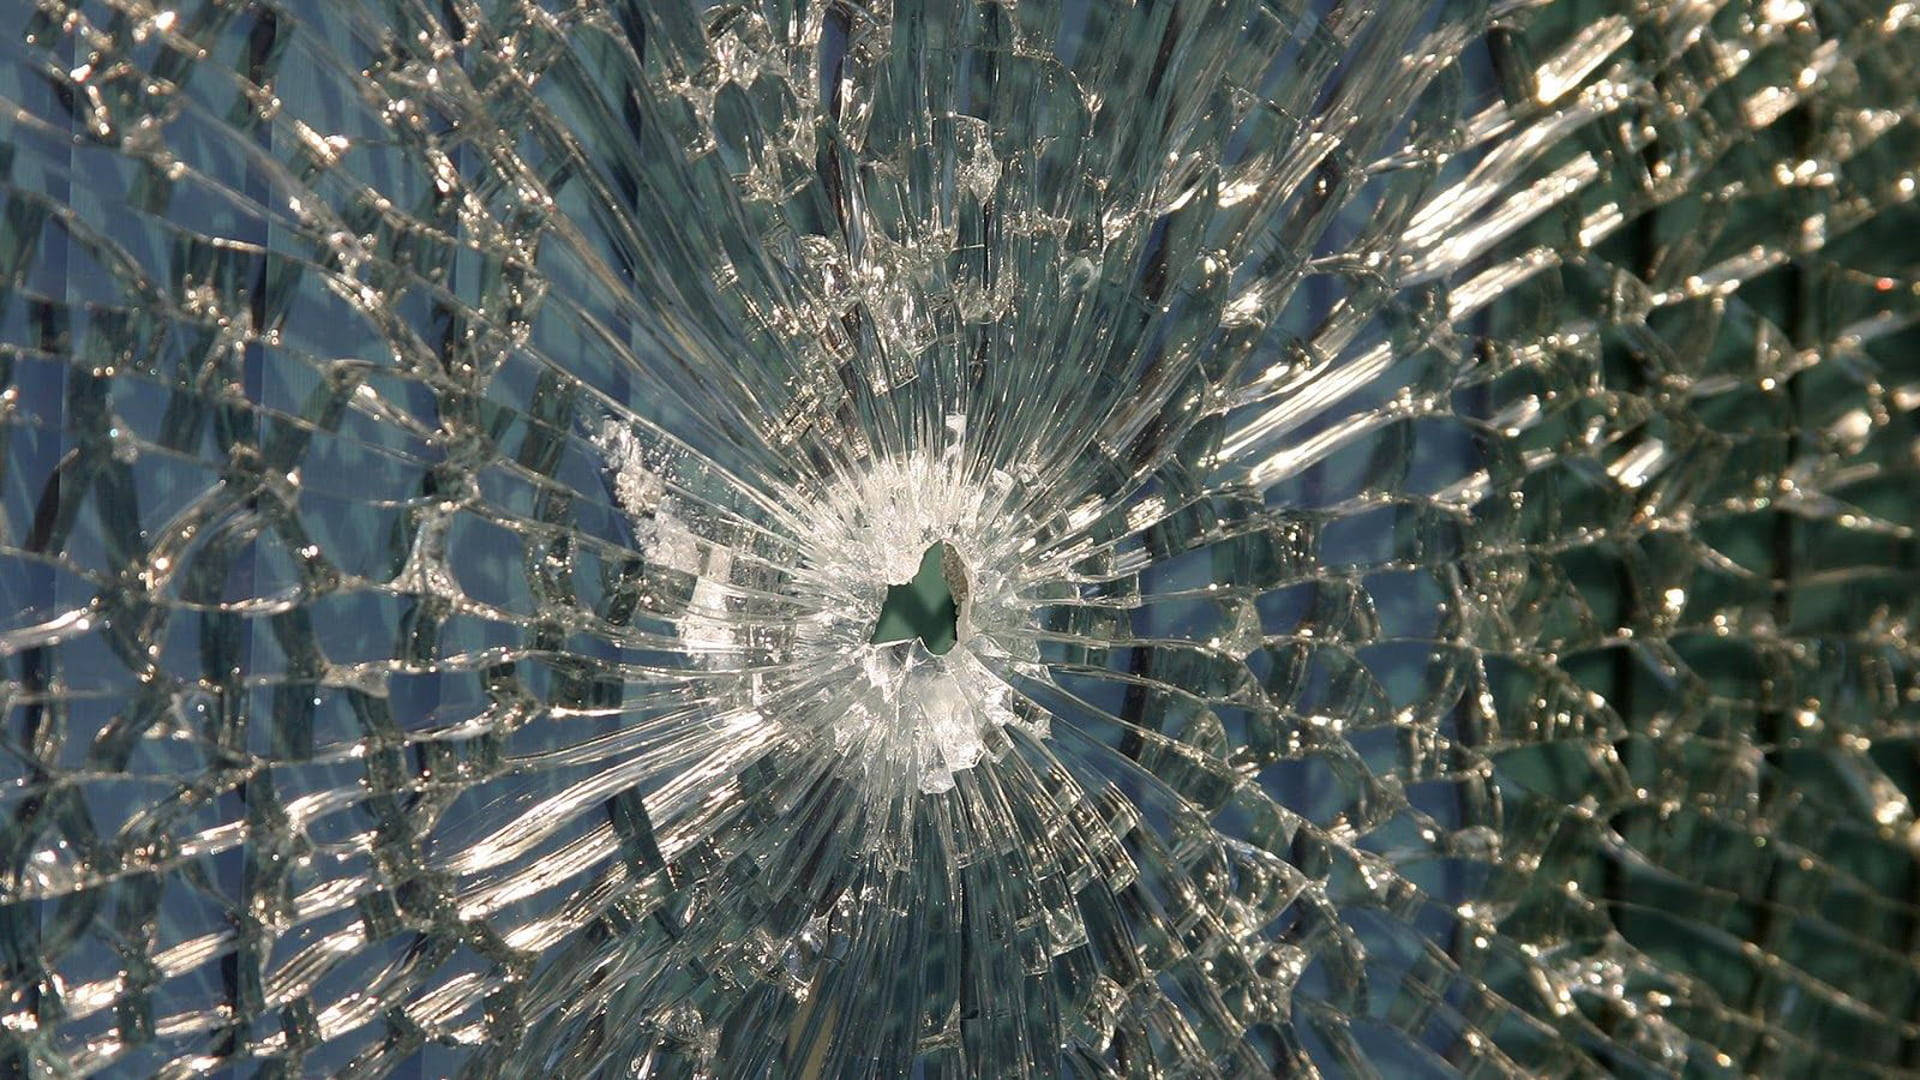 Hd Quality Broken Glass Screen Wallpaper